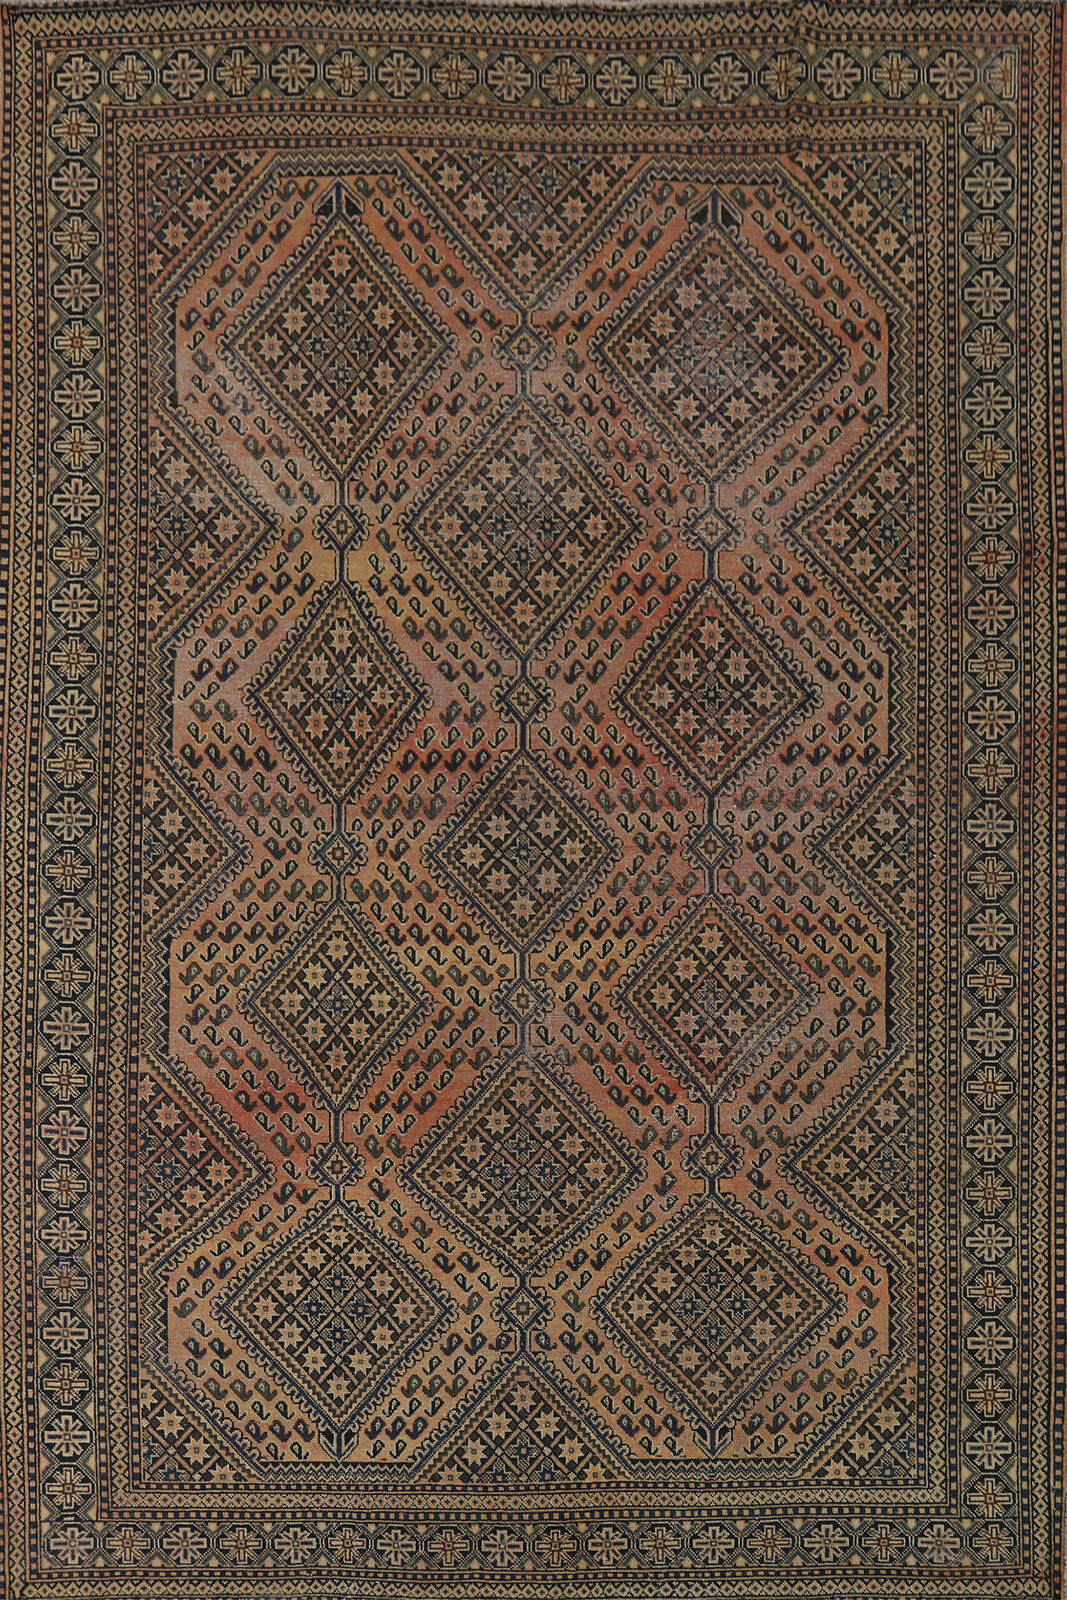 Vintage Distressed Bakhtiari Geometric Rust Wool Hand-knotted Area Rug 7x10